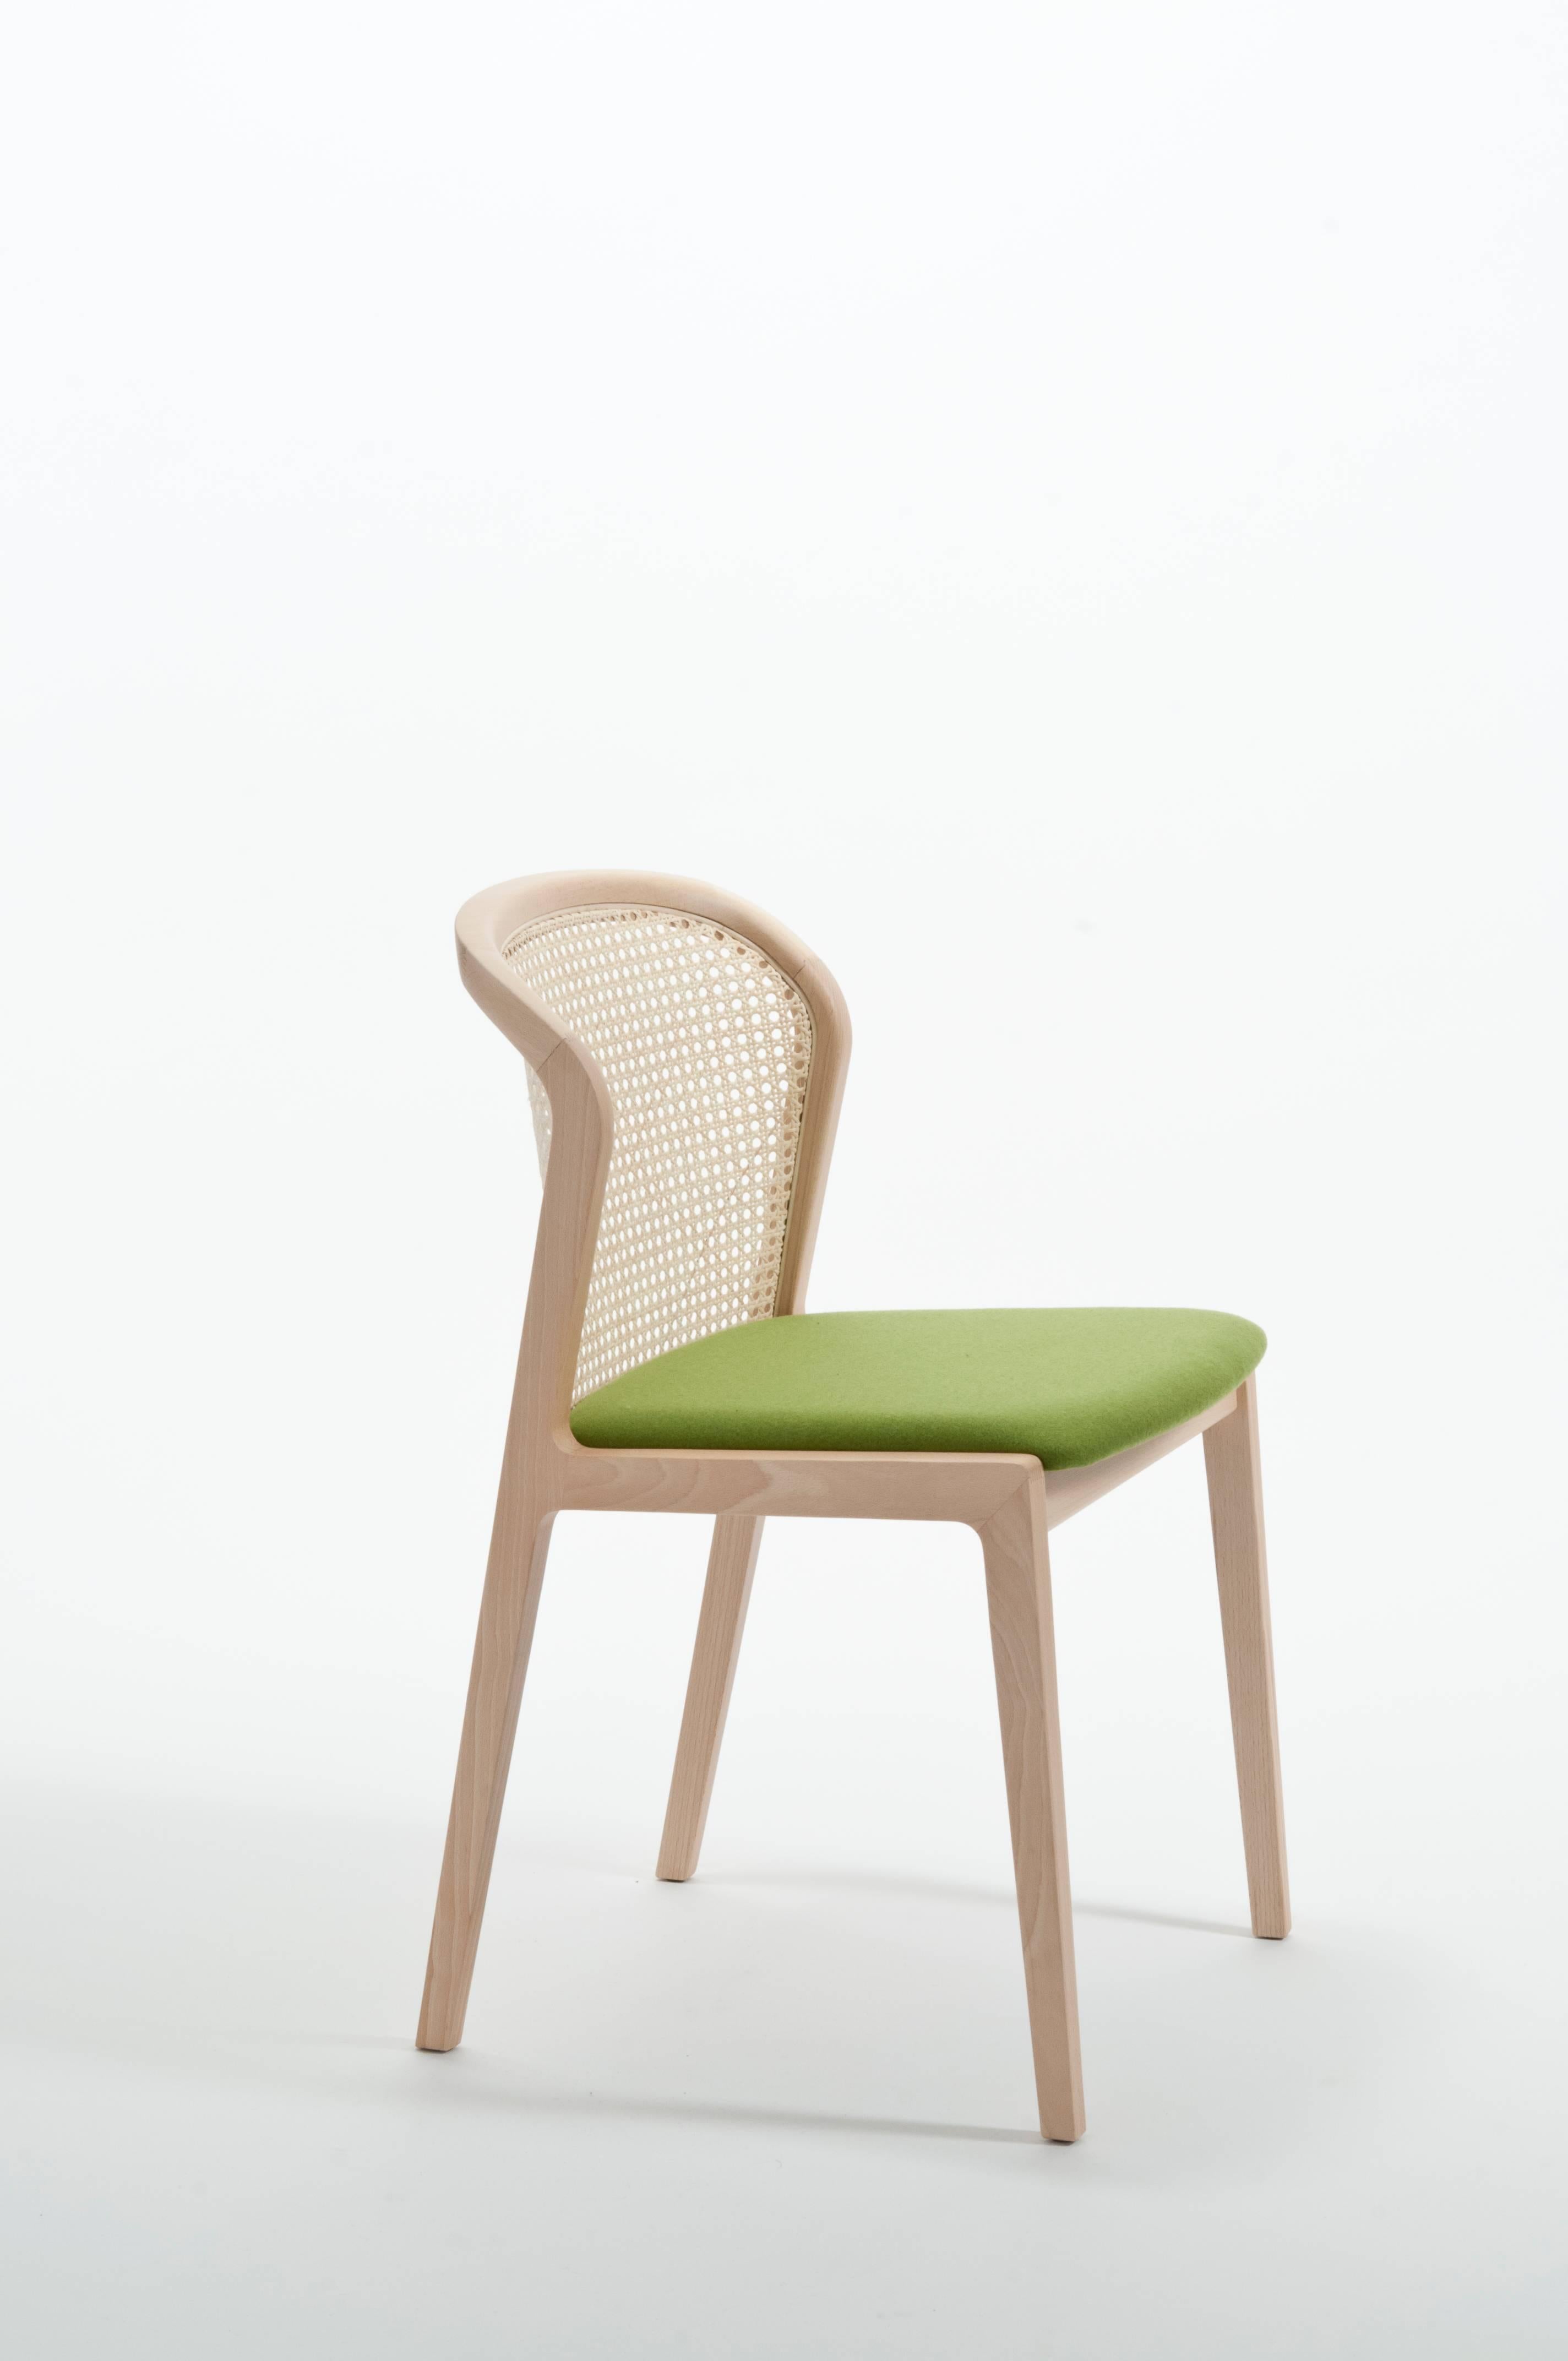 Vienna est une chaise extraordinairement confortable et élégante conçue par Eleg/One qui aime à citer Brancusi en disant que 